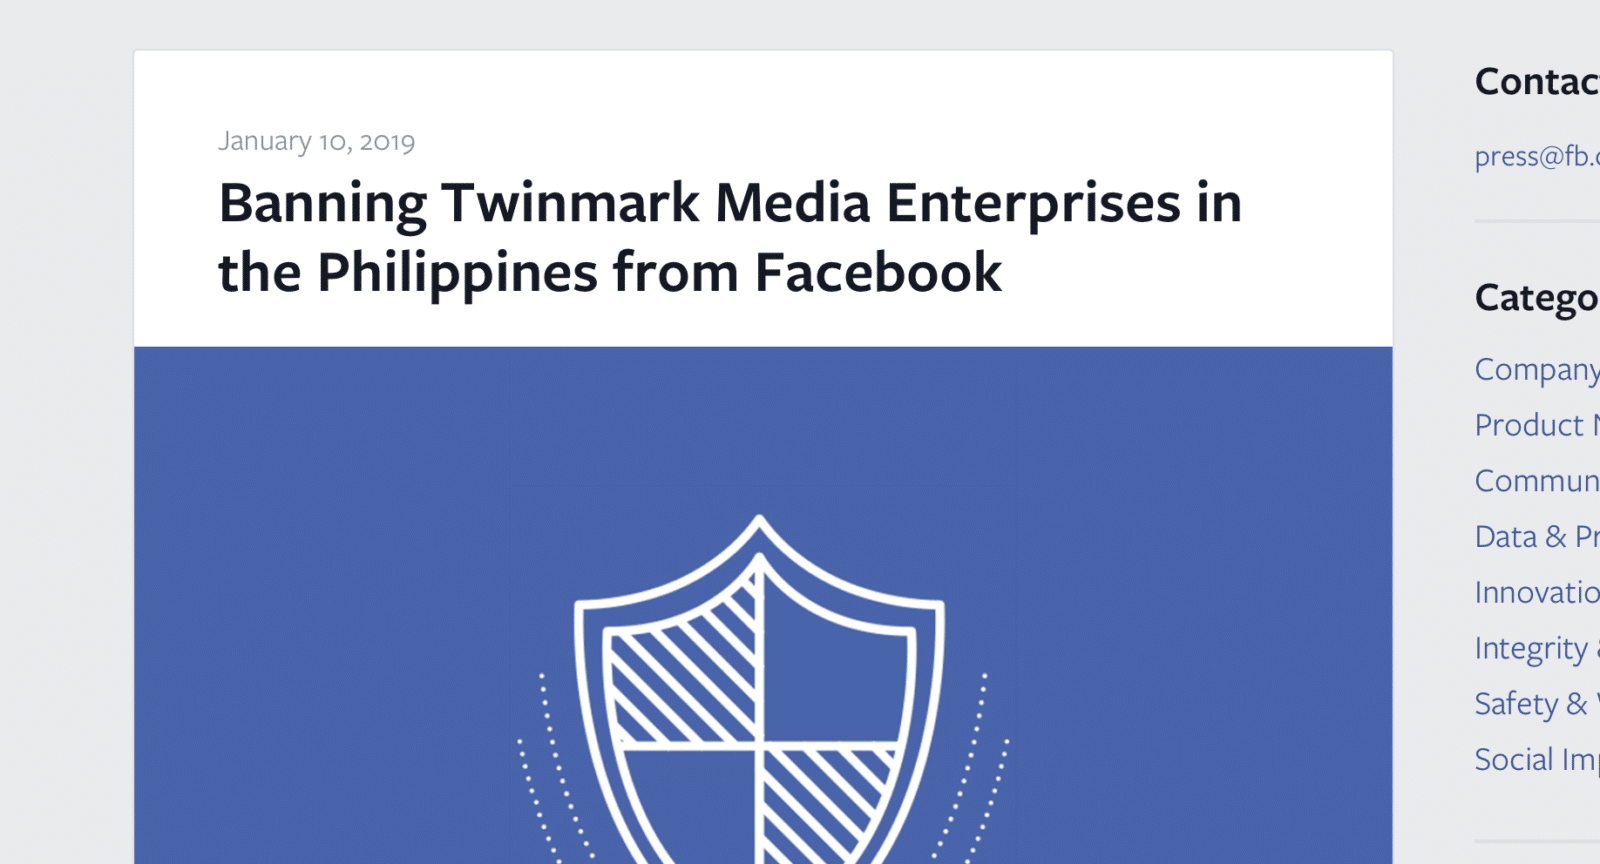 สรุปกรณี ทำไม Facebook ถึงแบน Twinmark Media ทำอะไรถึงผิดกฏร้ายแรง